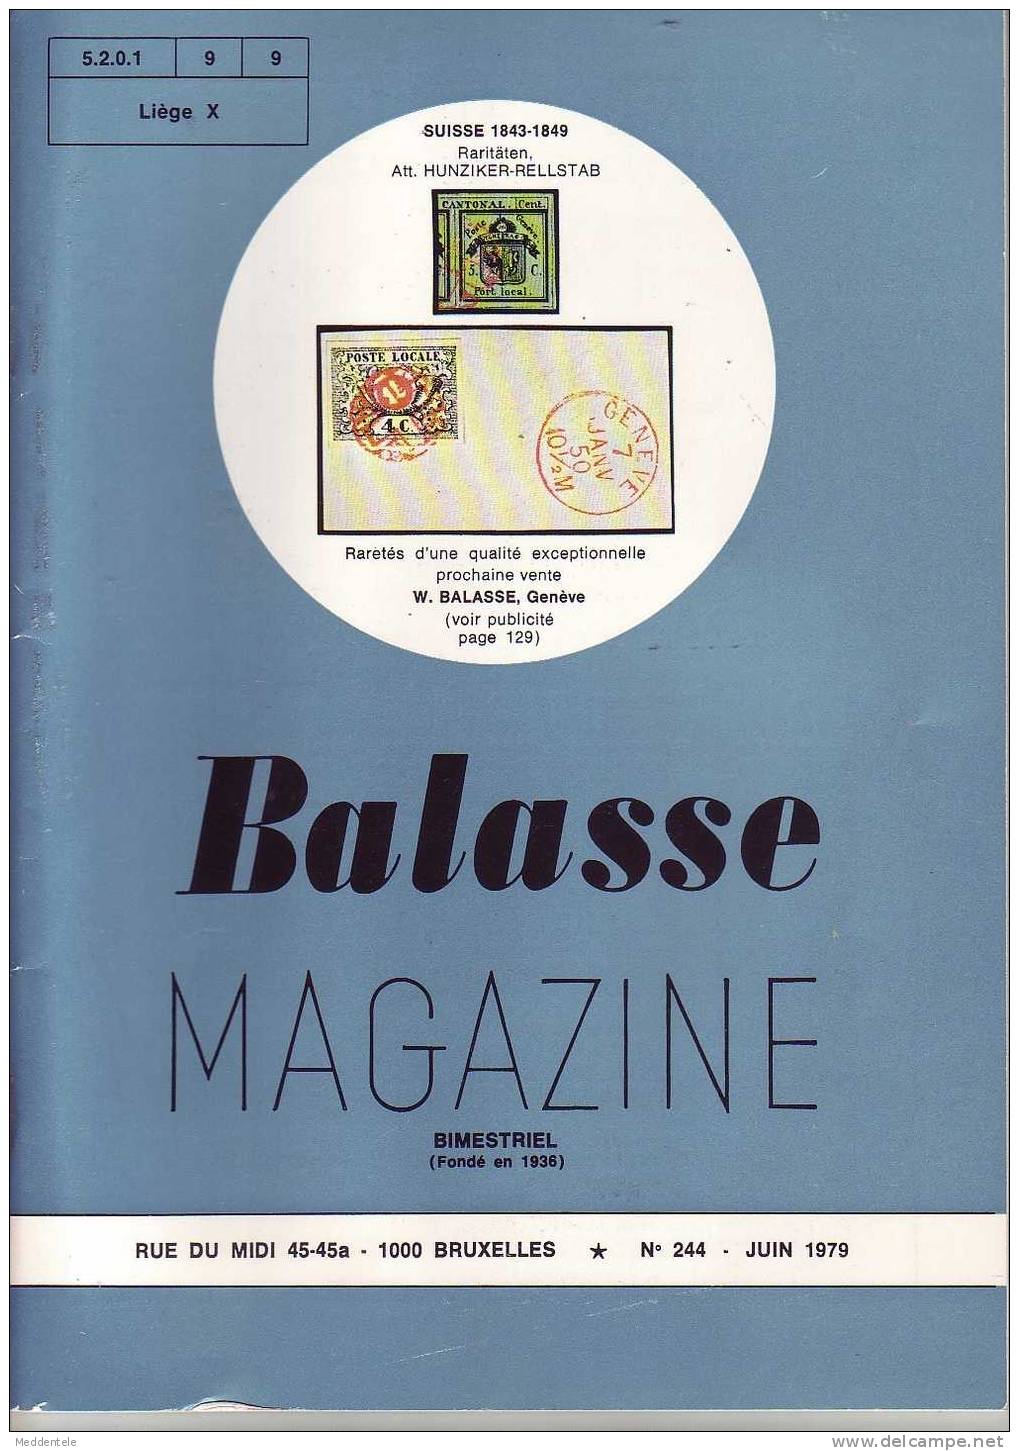 BALASSE MAGAZINE N° 244 - Französisch (ab 1941)